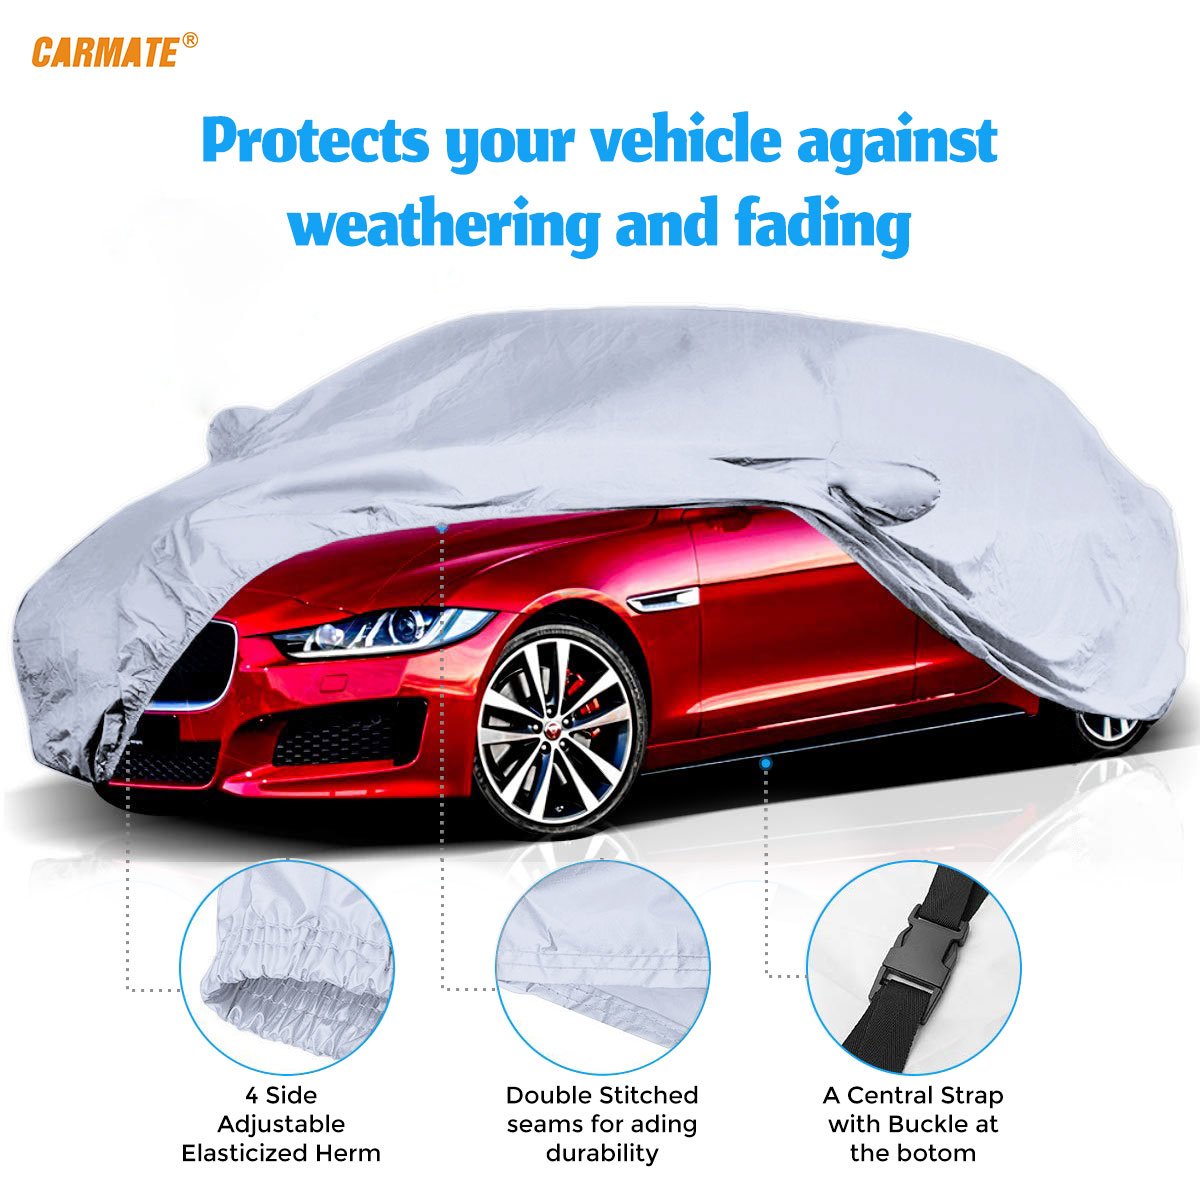 Carmate Premium Car Body Cover Silver Matty (Silver) for  Toyota - Innova - CARMATE®